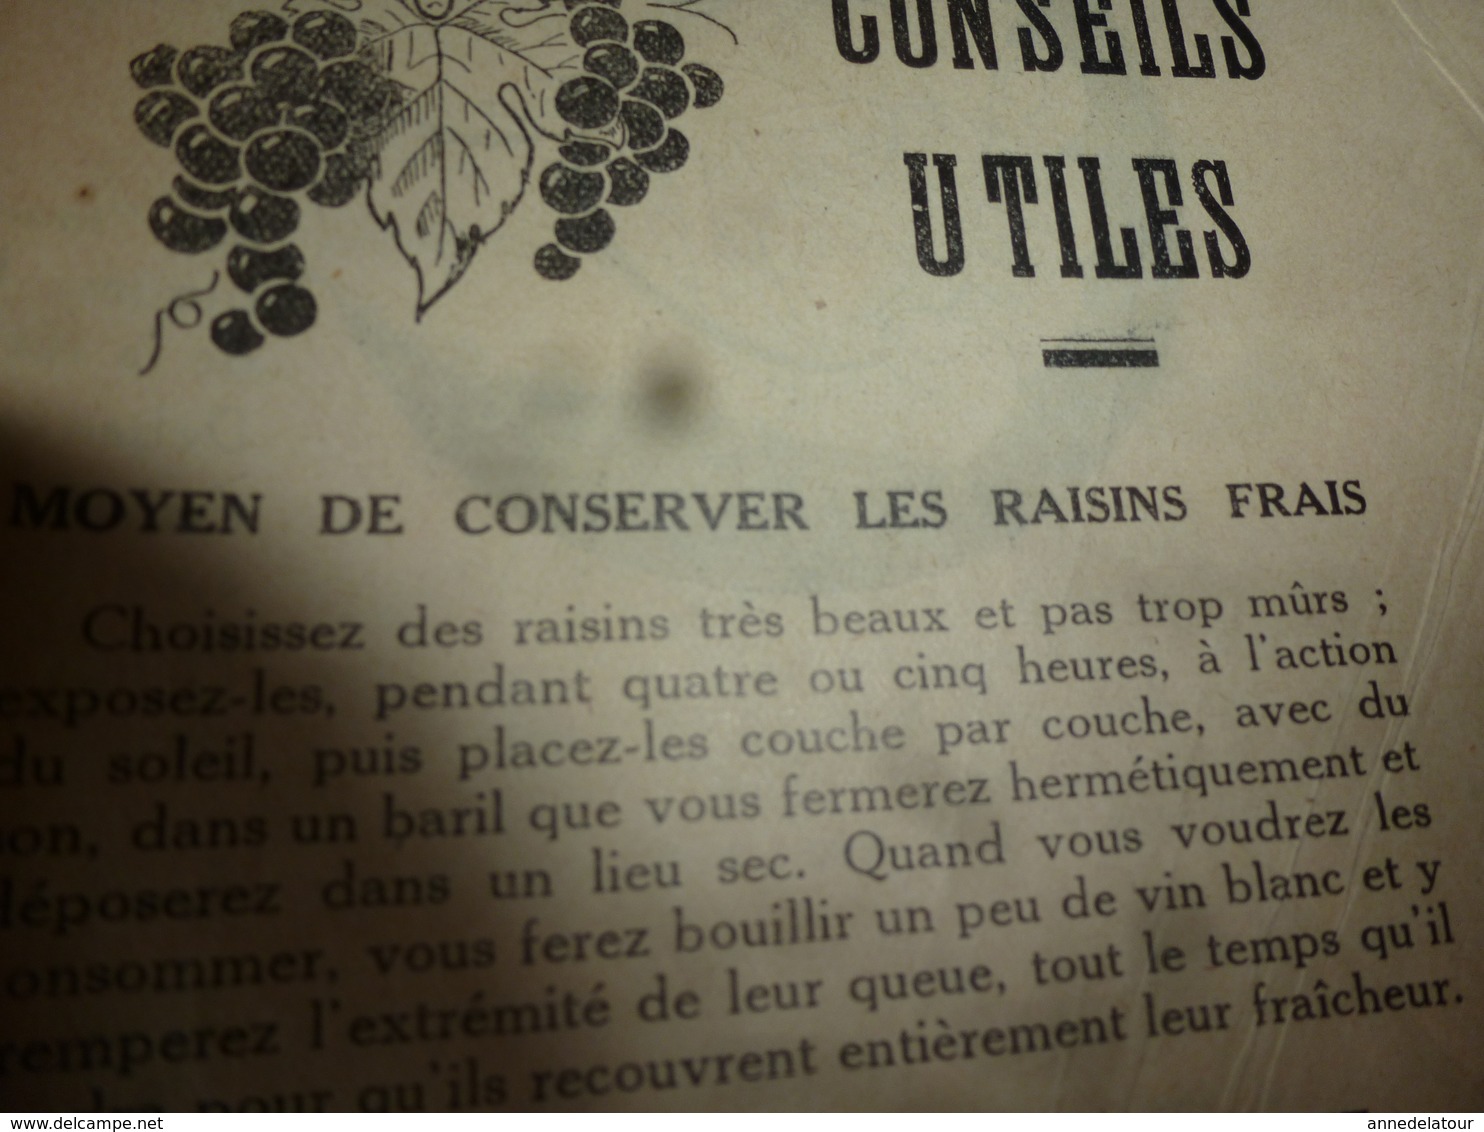 1933  LE RURAL MODERNE :Conserver les fruits; Les asperges; L'eau potable dans les hameaux;Les bons conseils;etc